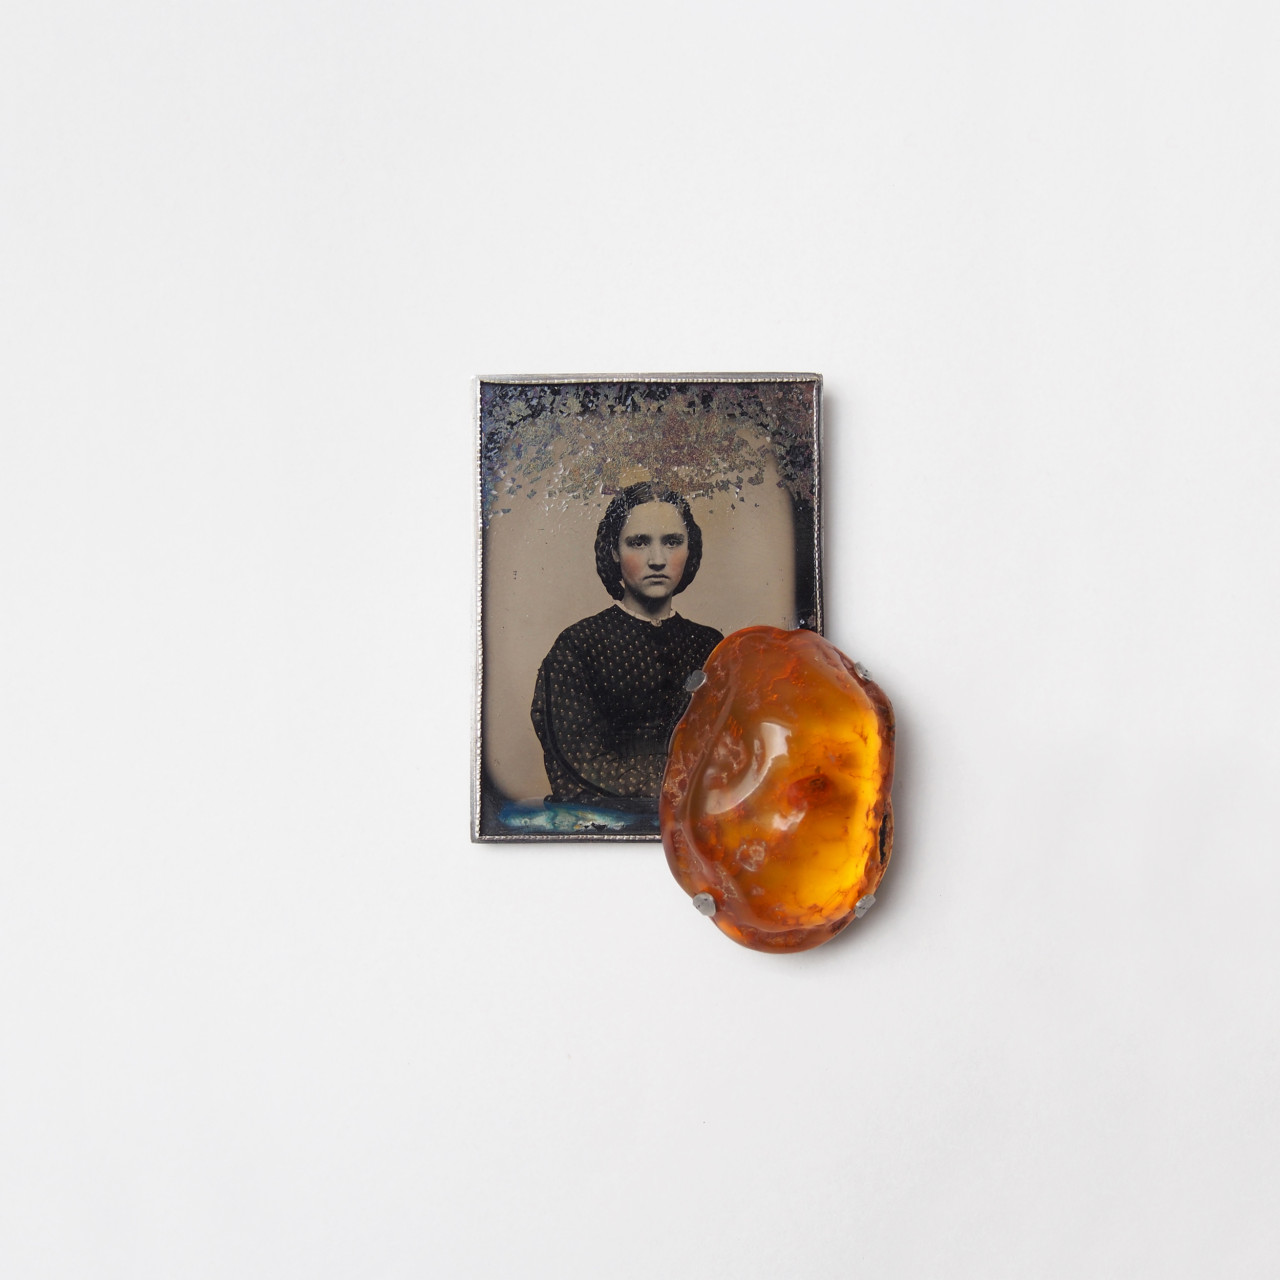 Bettina Speckner, Amber Girl, 2015. Ferrotype, silver, amber, 8 x 5.5cm. Courtesy of the artist